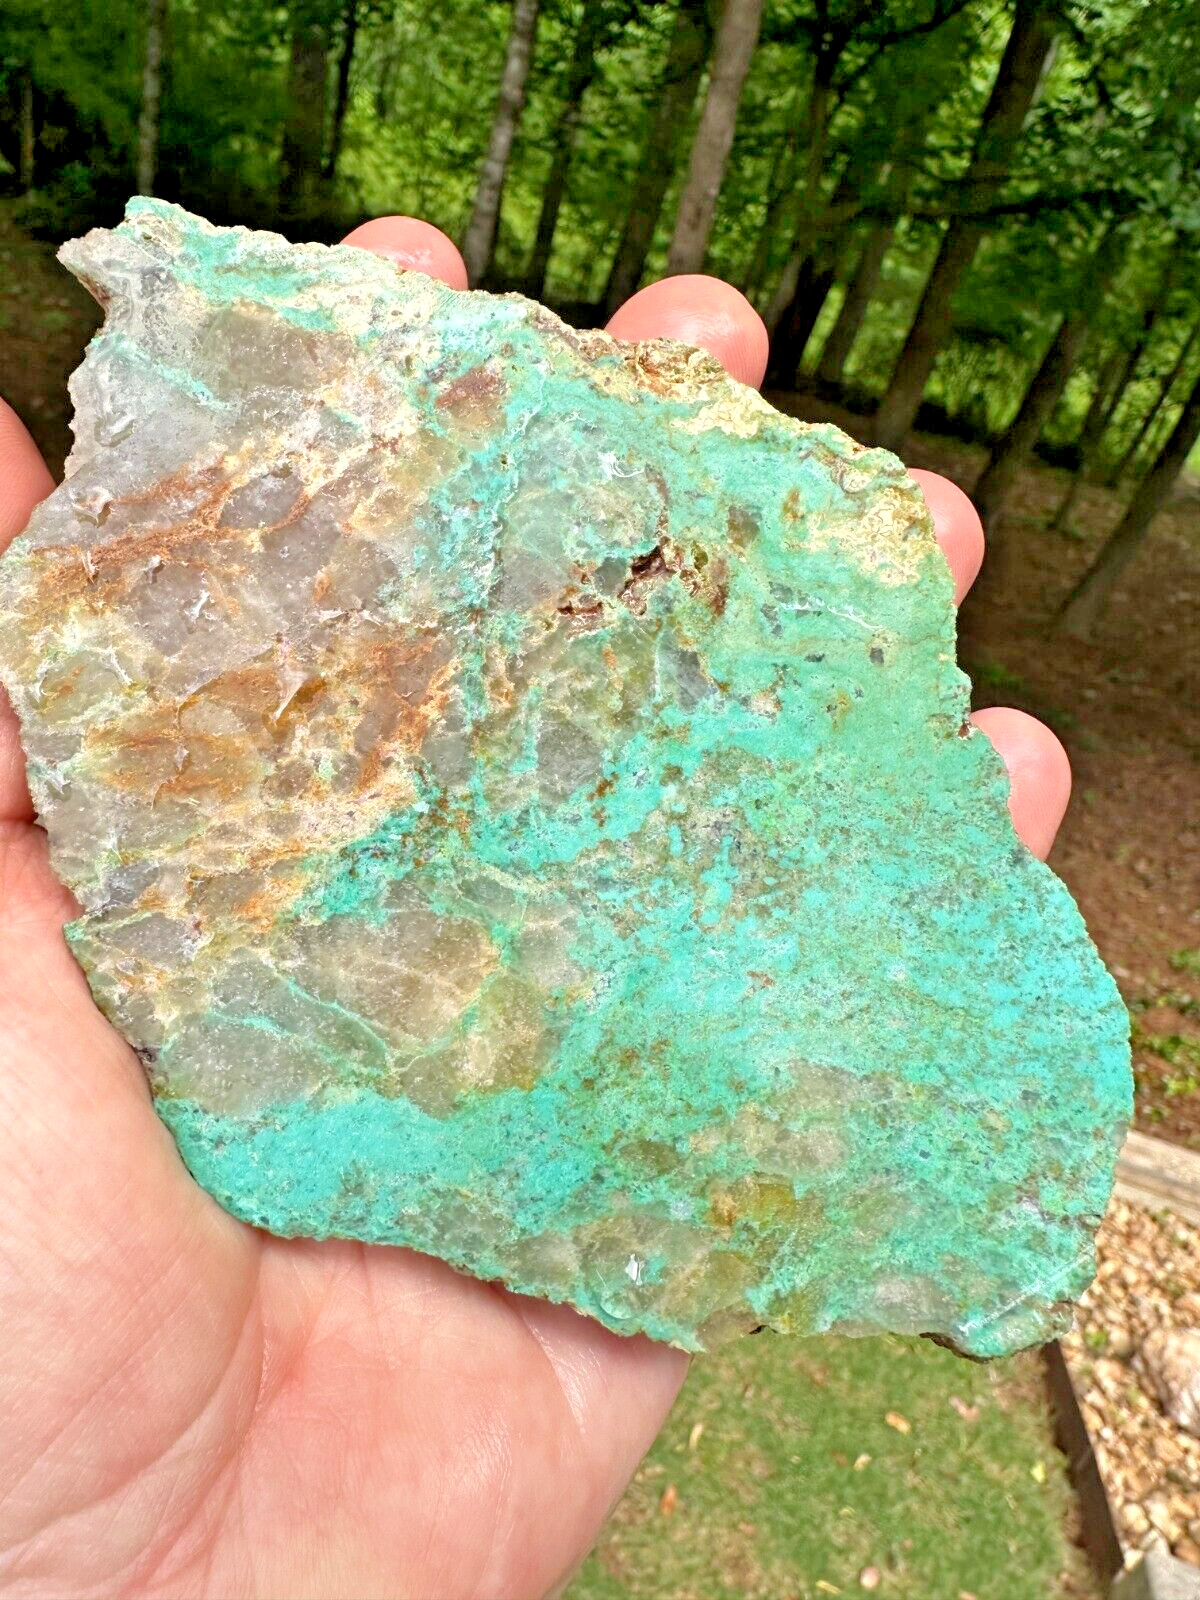 Turquoise SPECIMEN in matrix - almost 2 lb